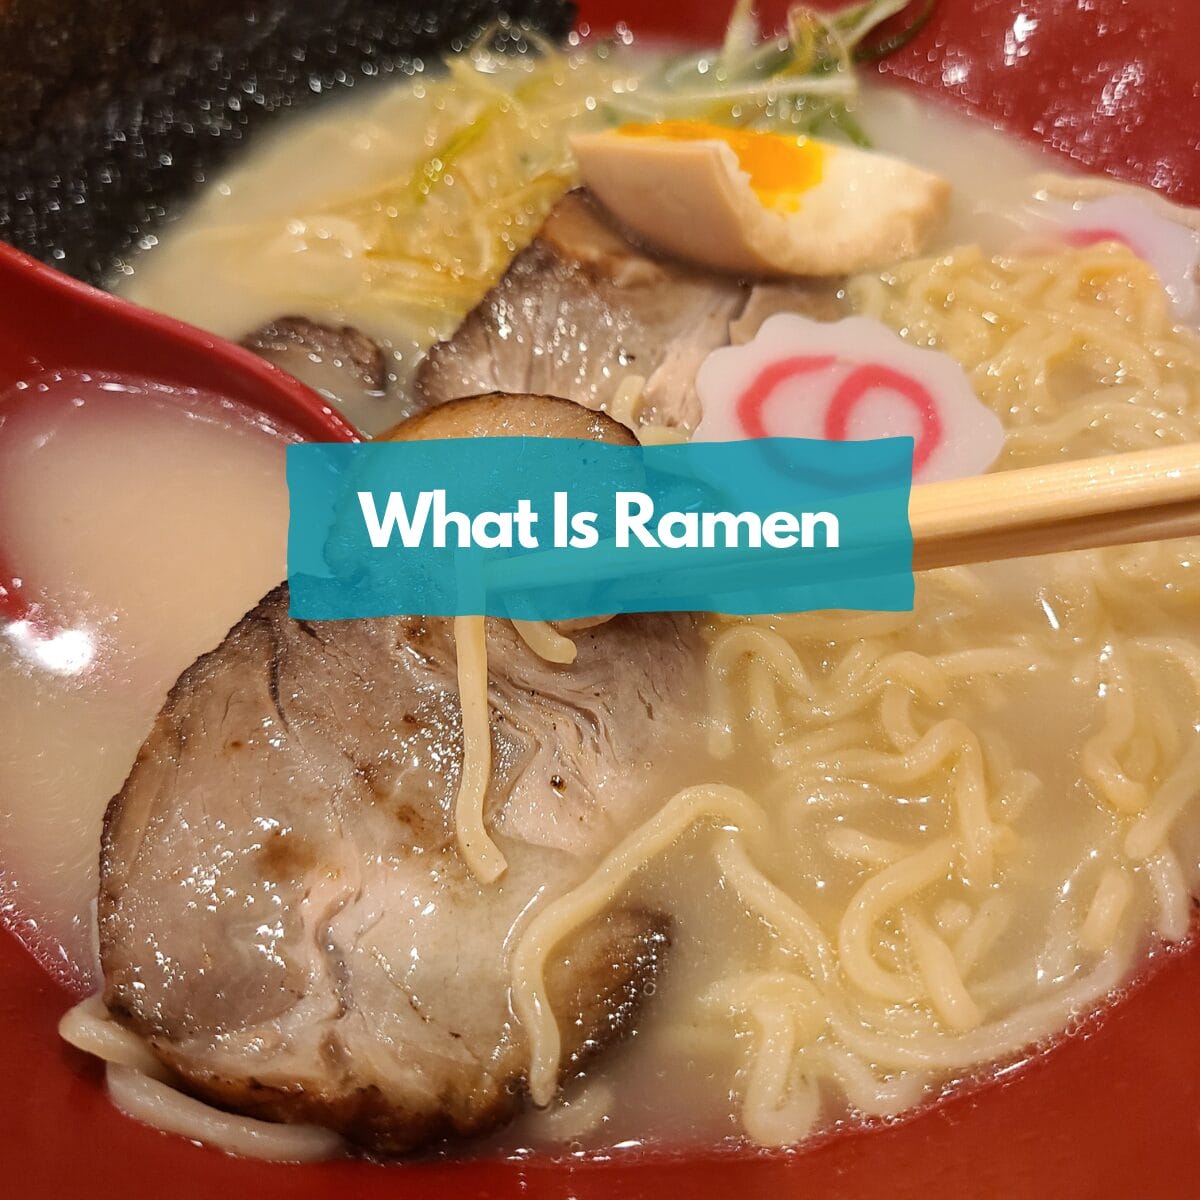 What is ramen